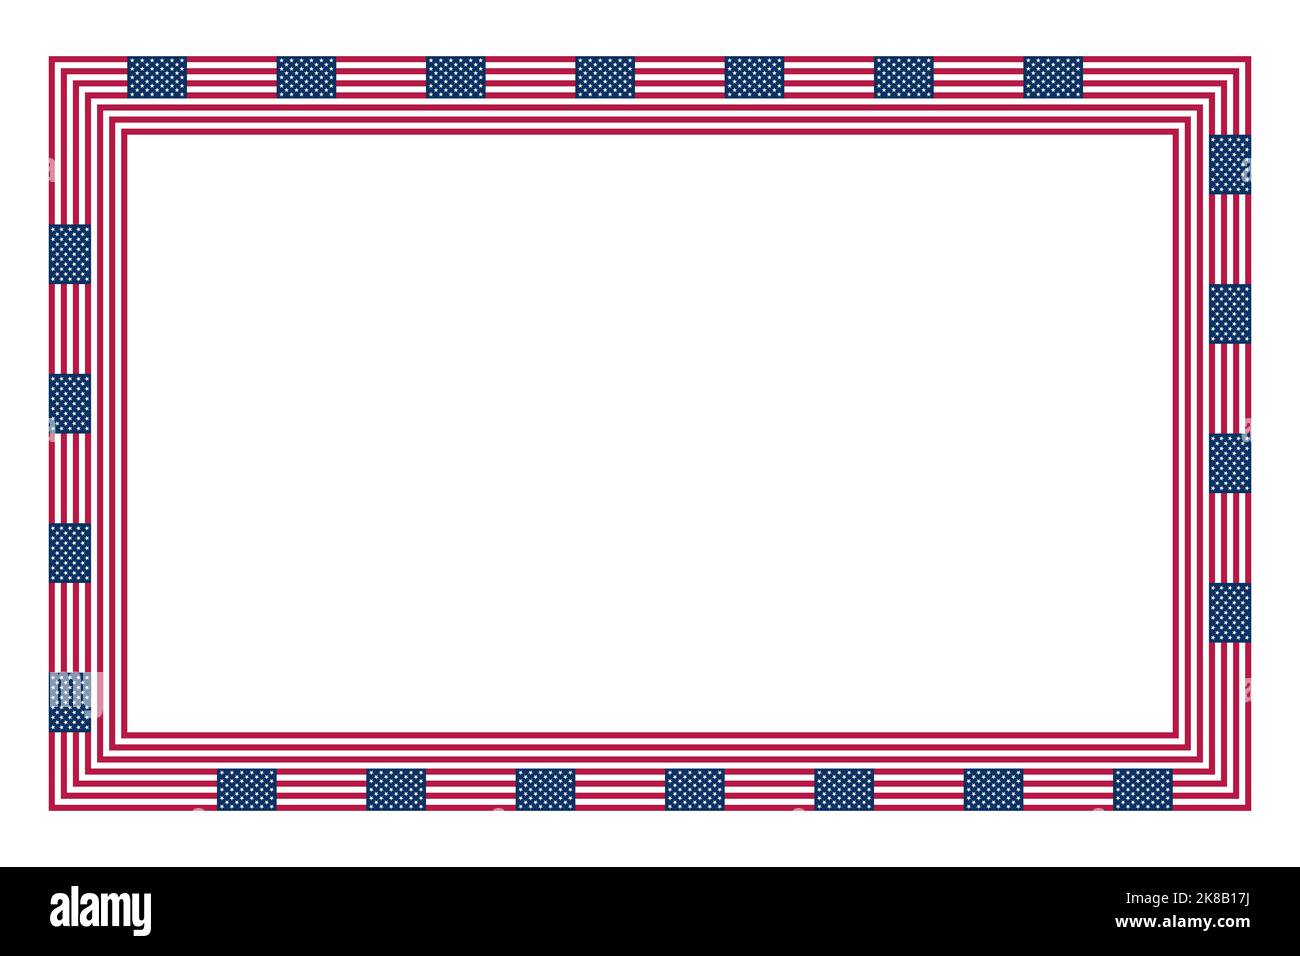 Flagge der Vereinigten Staaten, rechteckiger Rahmen. Grenze aus dem wiederholten Motiv der Nationalflagge der Vereinigten Staaten von Amerika. Stockfoto